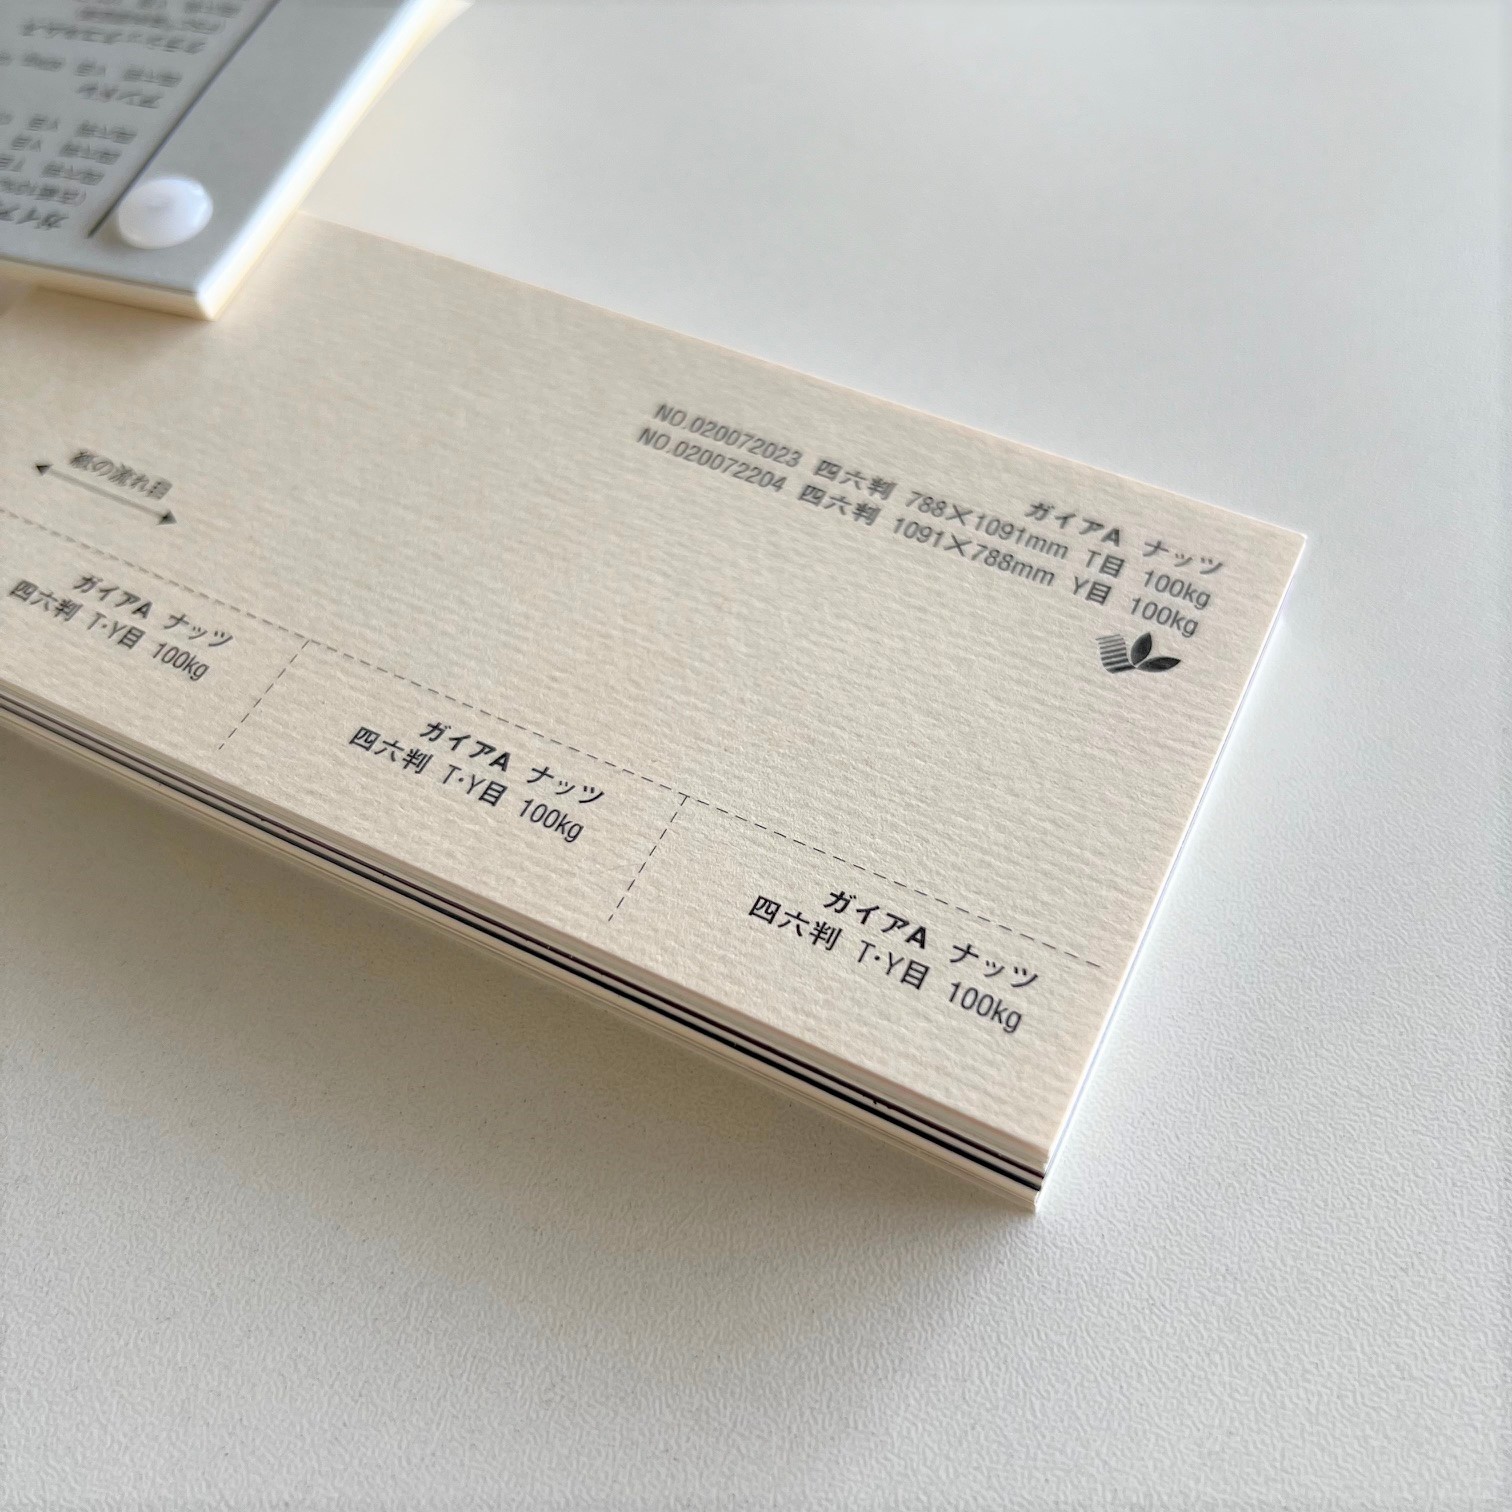 ガイアA 100kg(0.17mm) ナッツ 商品画像サムネイル2